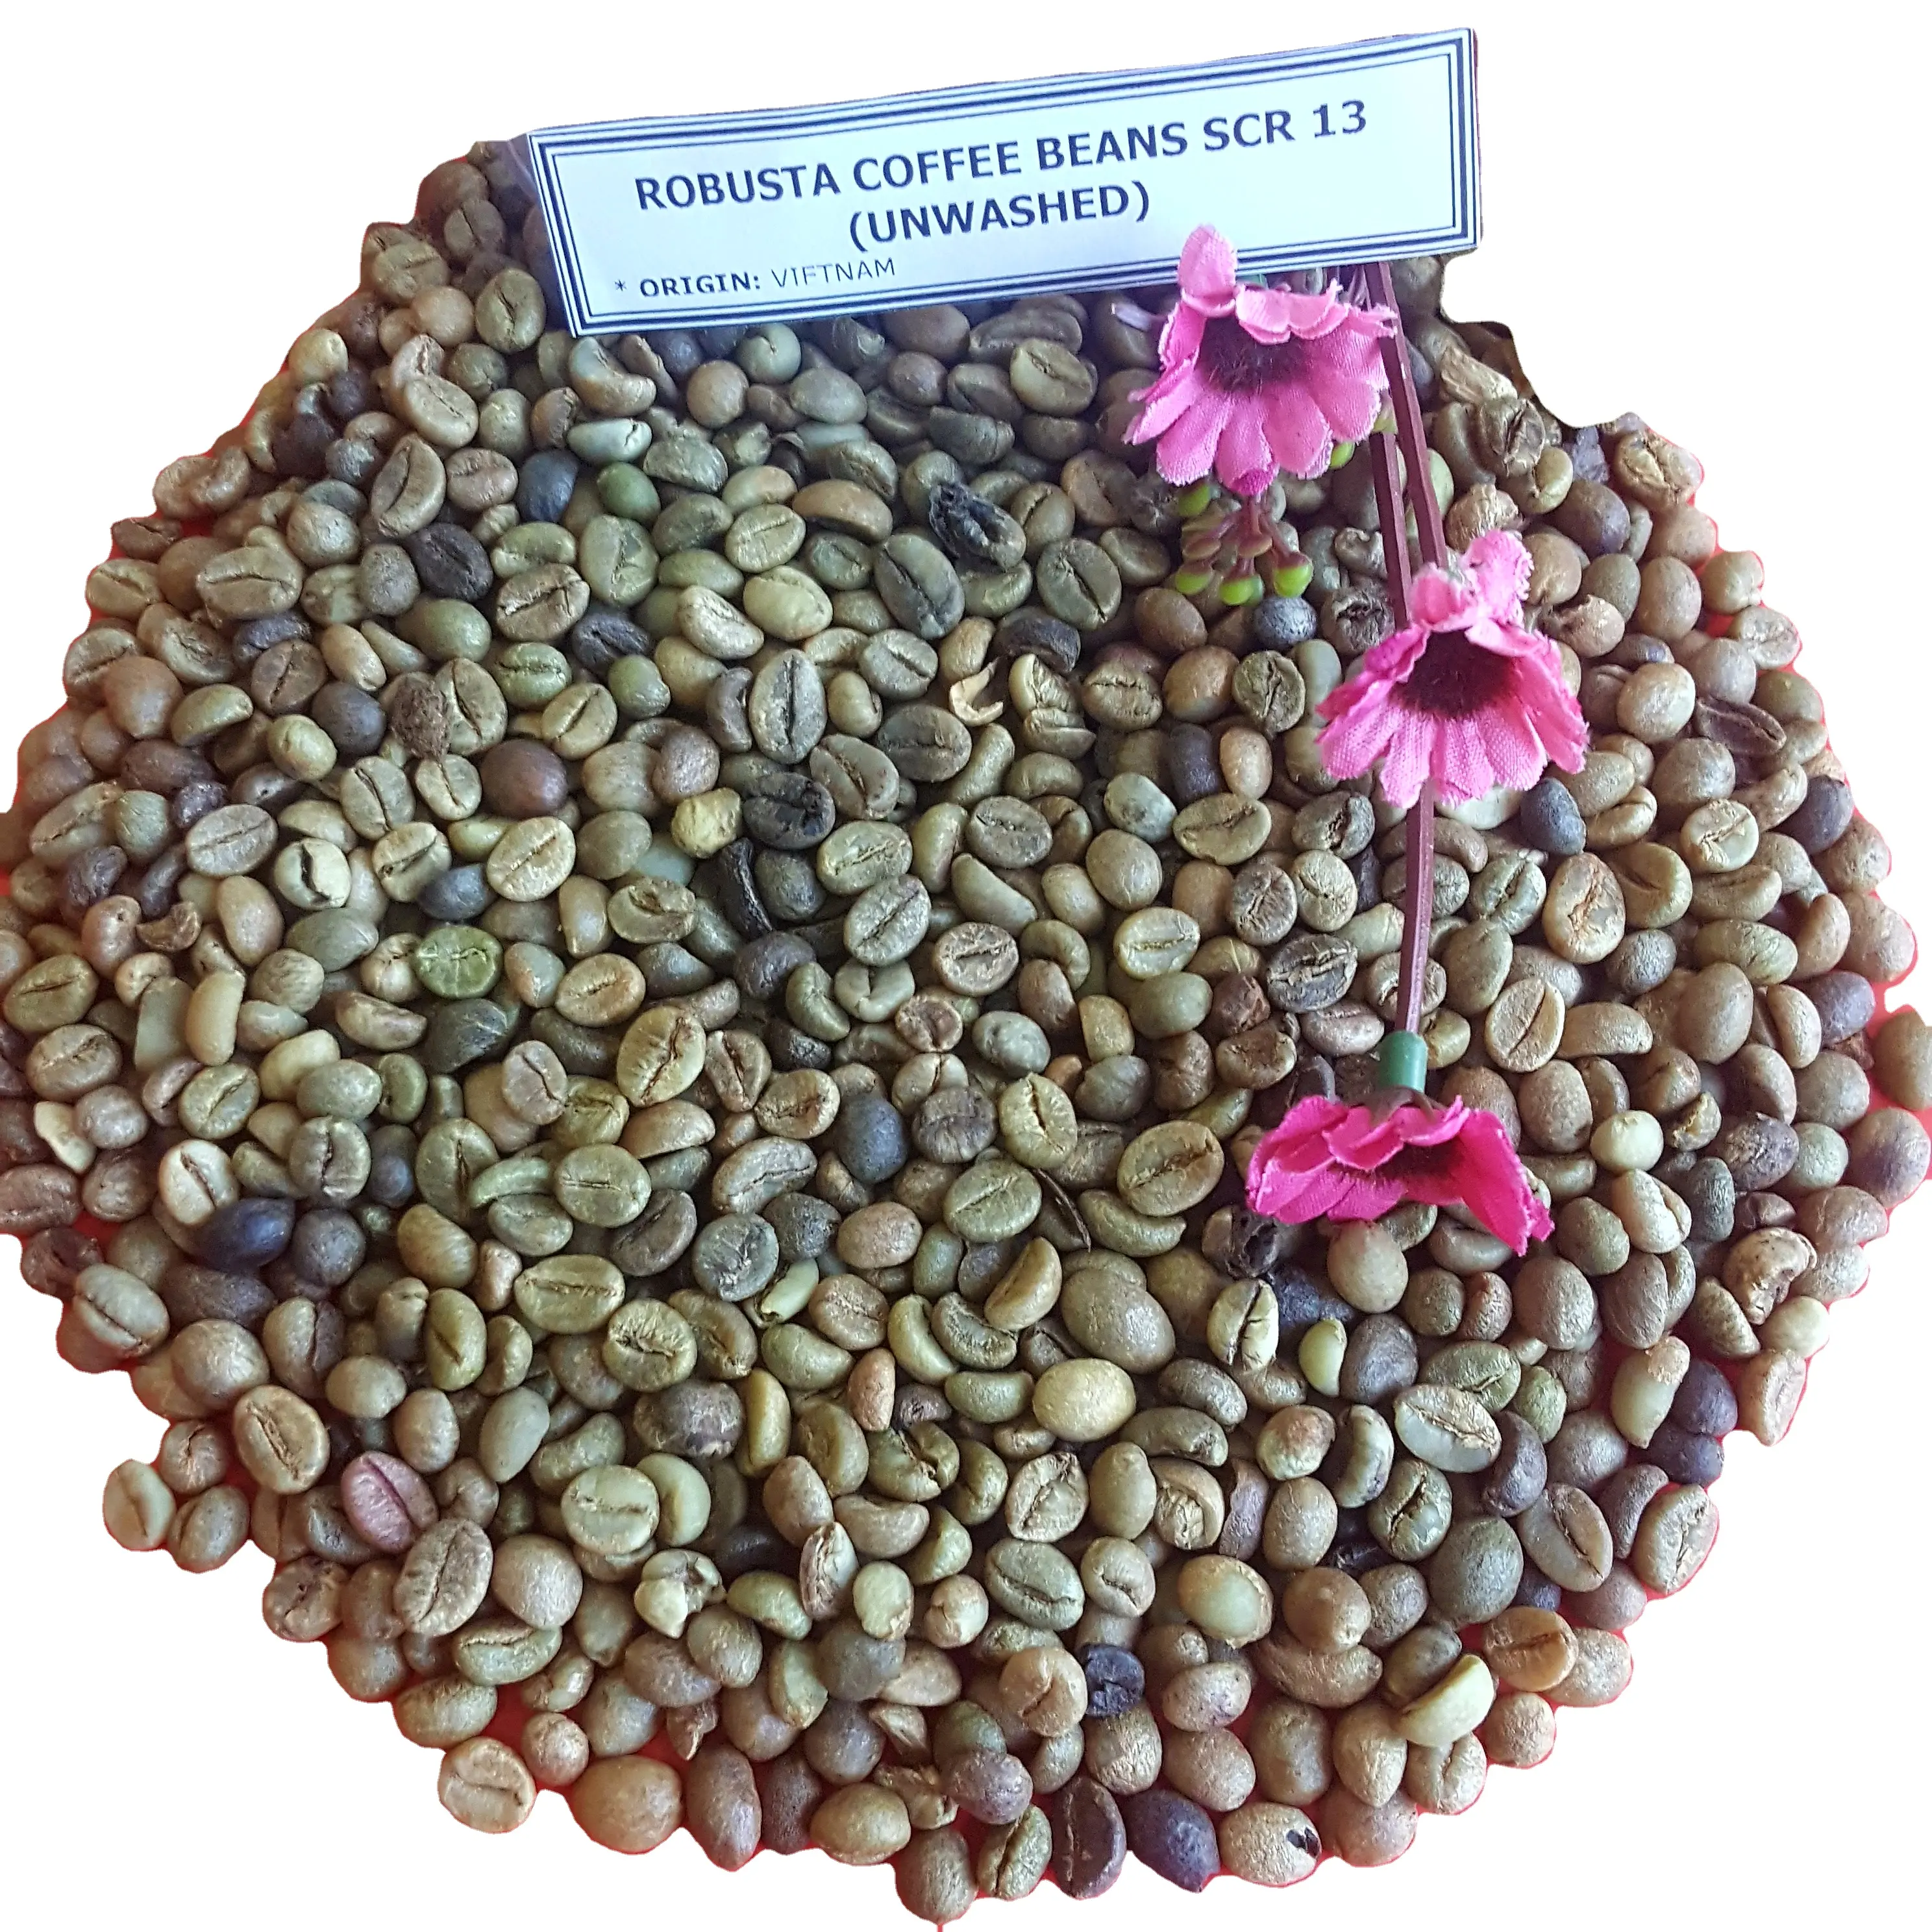 Новый урожай, вьетнамские кофейные зерна Robusta SCR 13, вымытые прямо из Vilaconic групповой контакт через Whatsapp (+ 84398885178)